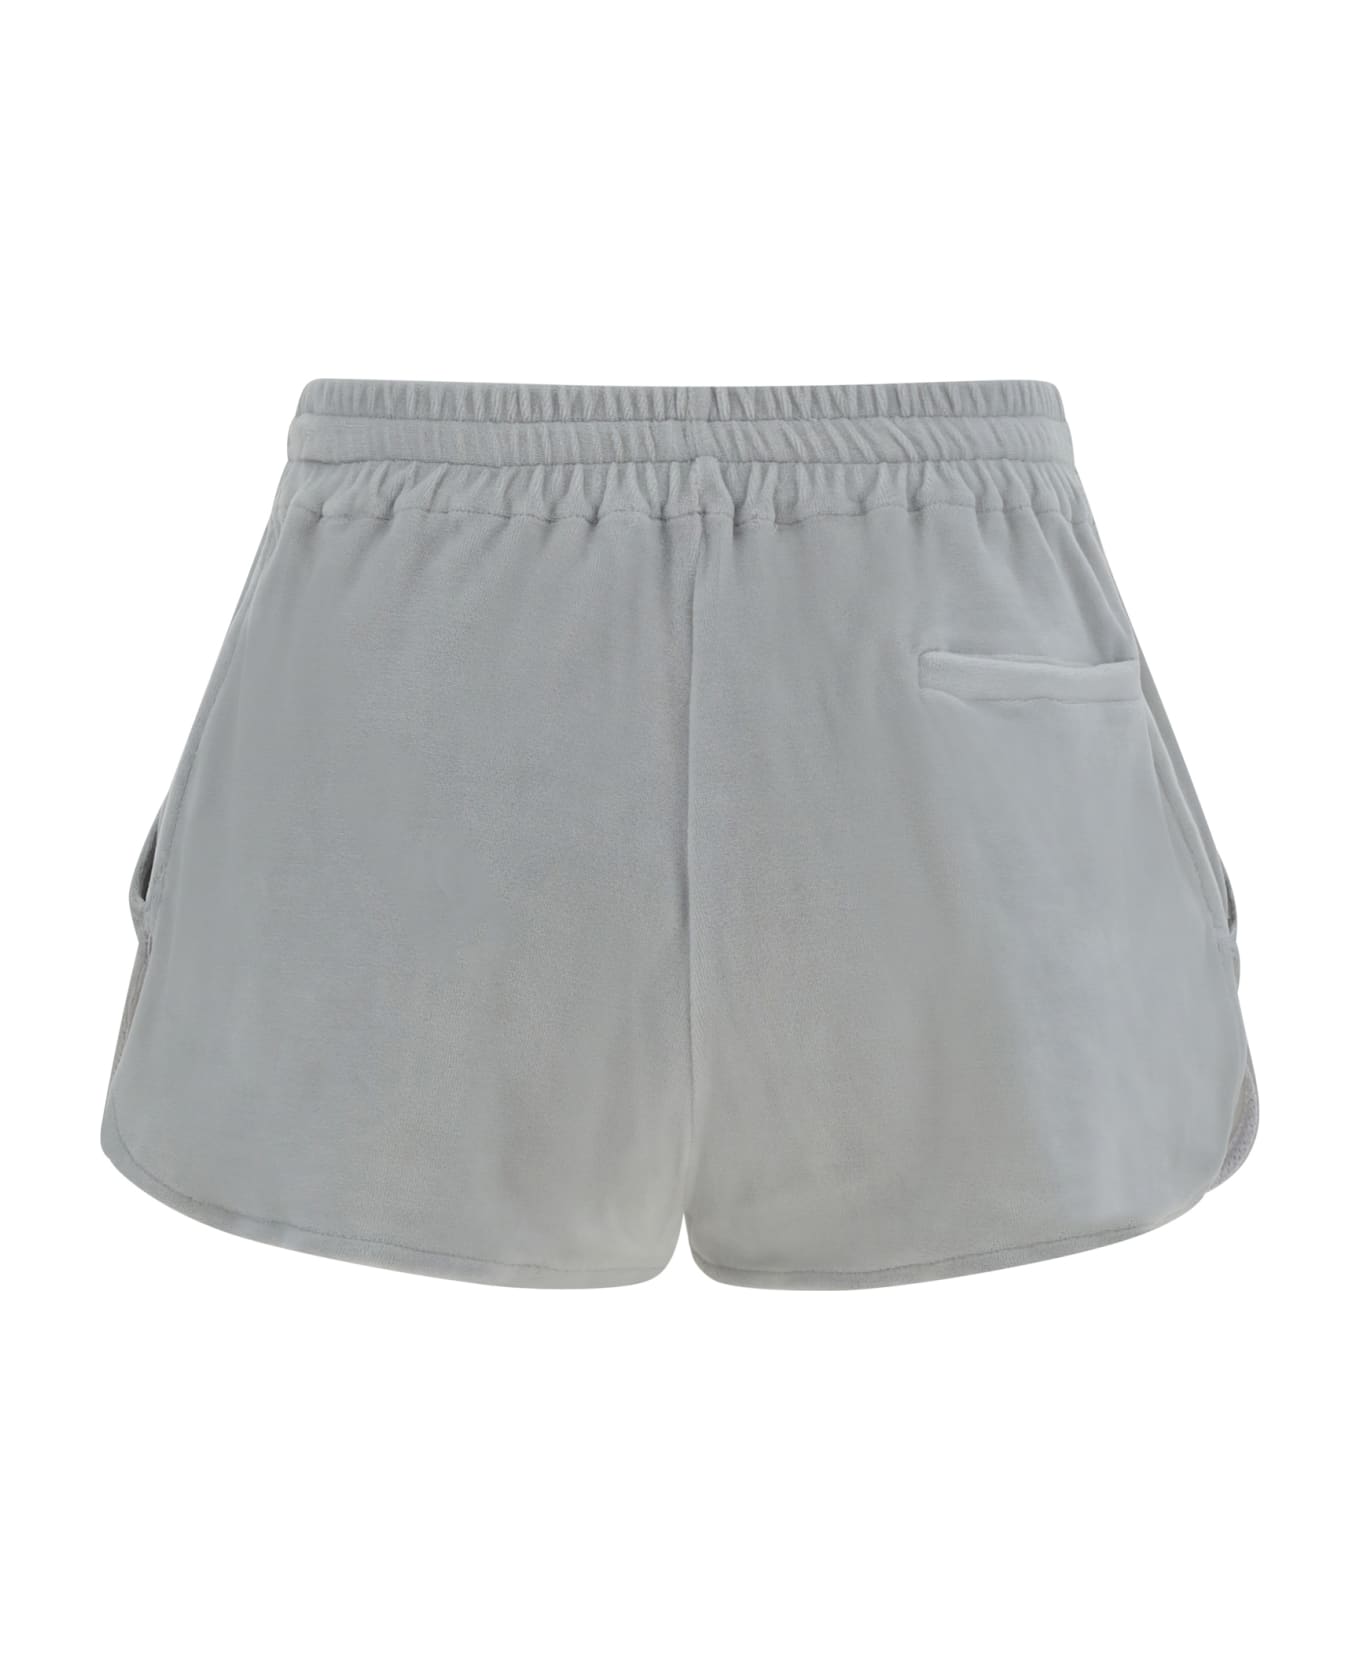 Autry Shorts - Velvet Grey ショートパンツ